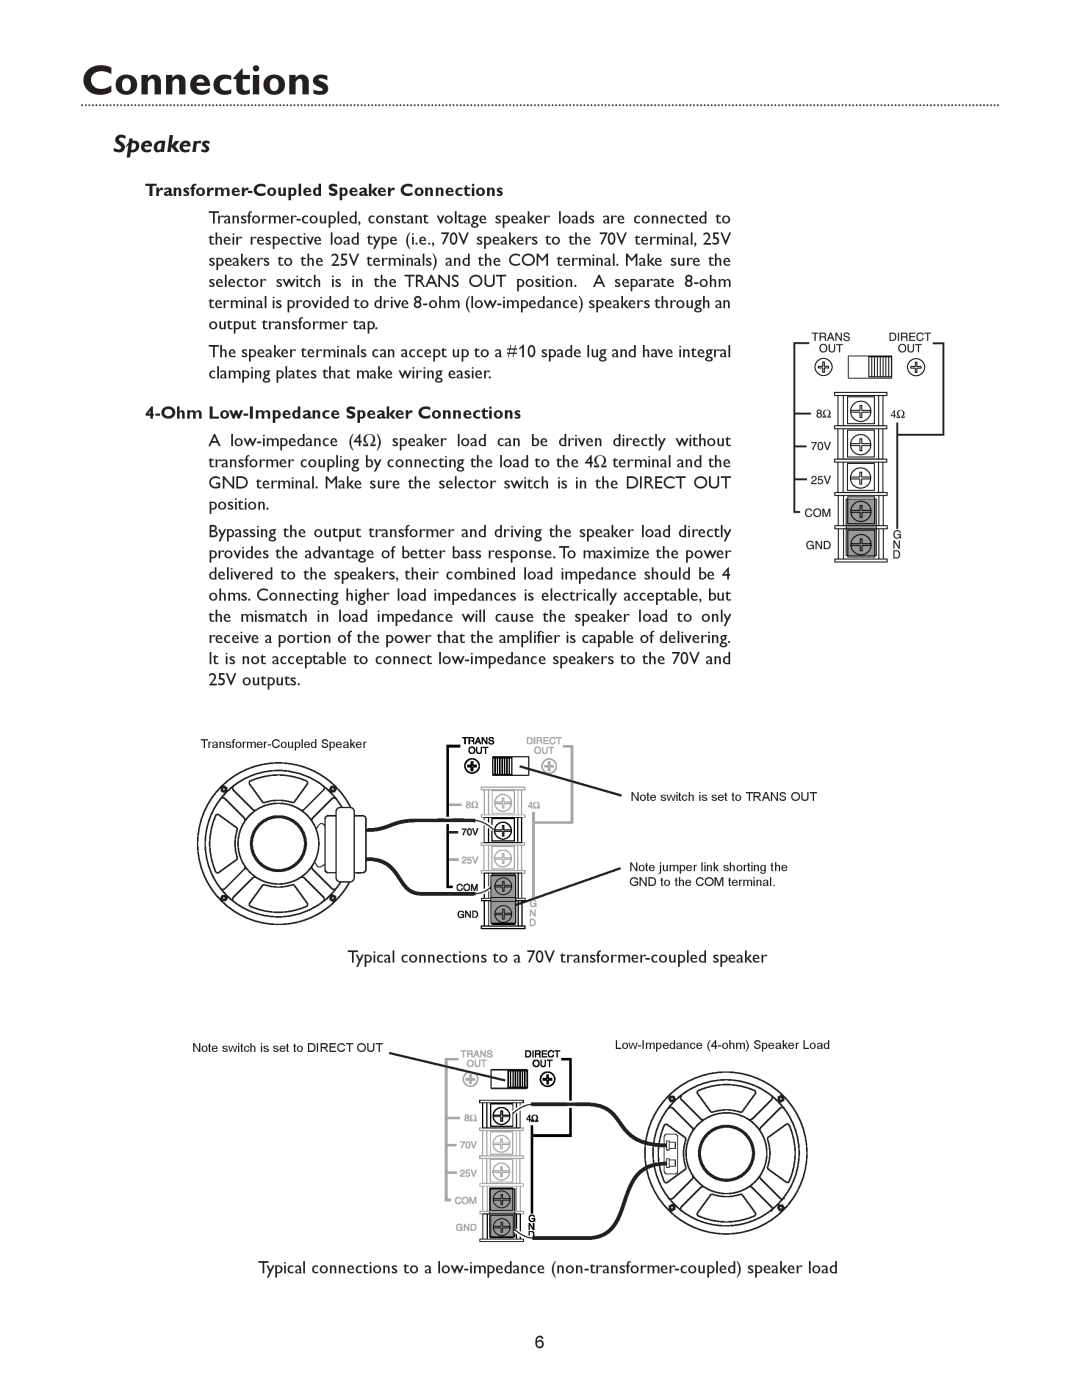 Bogen V35, & V250 specifications Speakers, Transformer-CoupledSpeaker Connections, Ohm Low-ImpedanceSpeaker Connections 